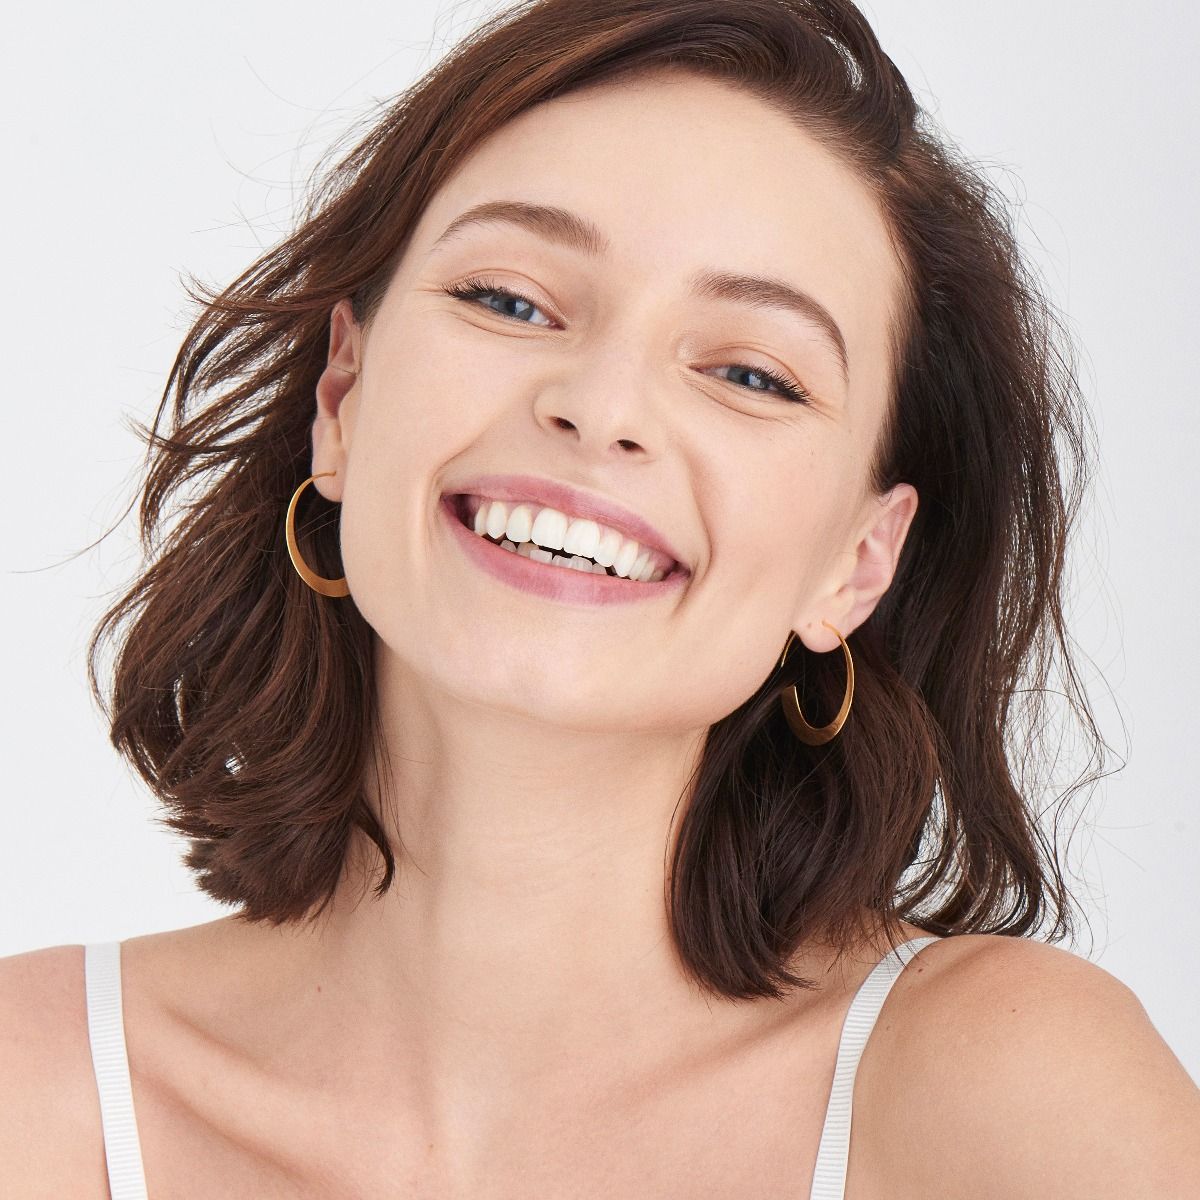 Buy Ania Haie Geometry Slim Hoop Earrings - Gold Online in UK